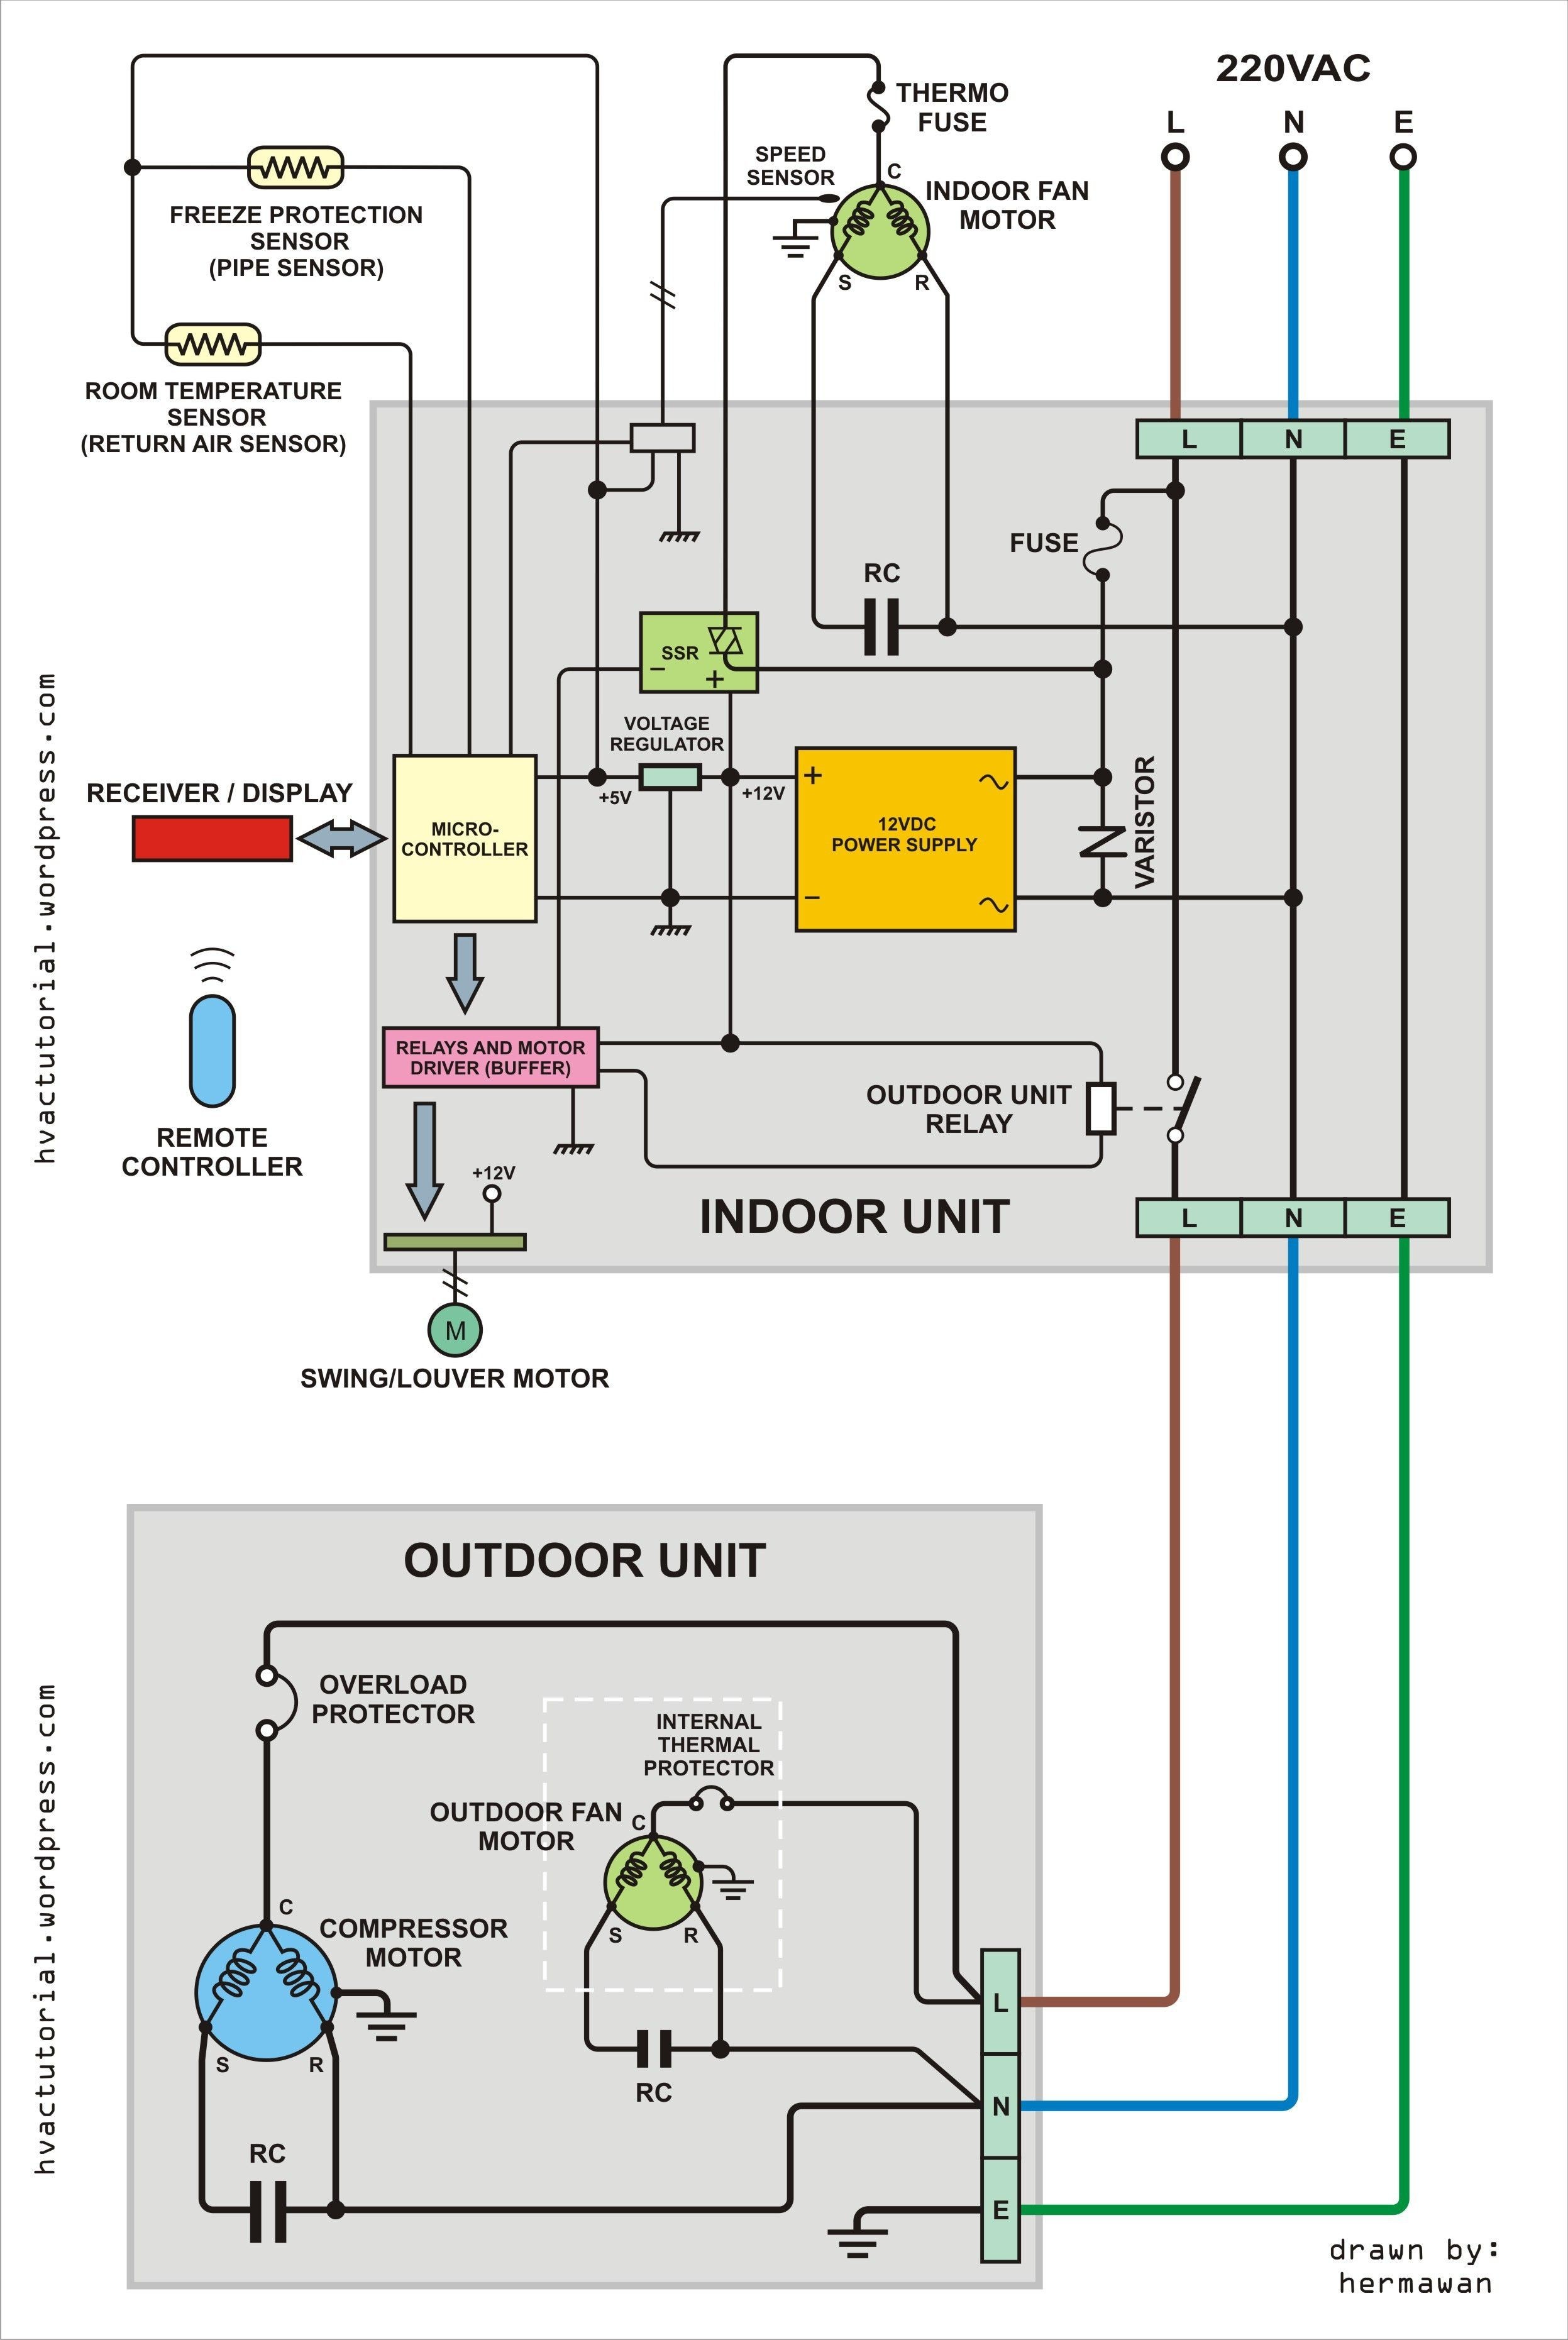 Air Conditioner Wiring Diagram Shocking Wiring Diagram Carrier Air Conditioner New Split Ac Csr Of Air Conditioner Wiring Diagram